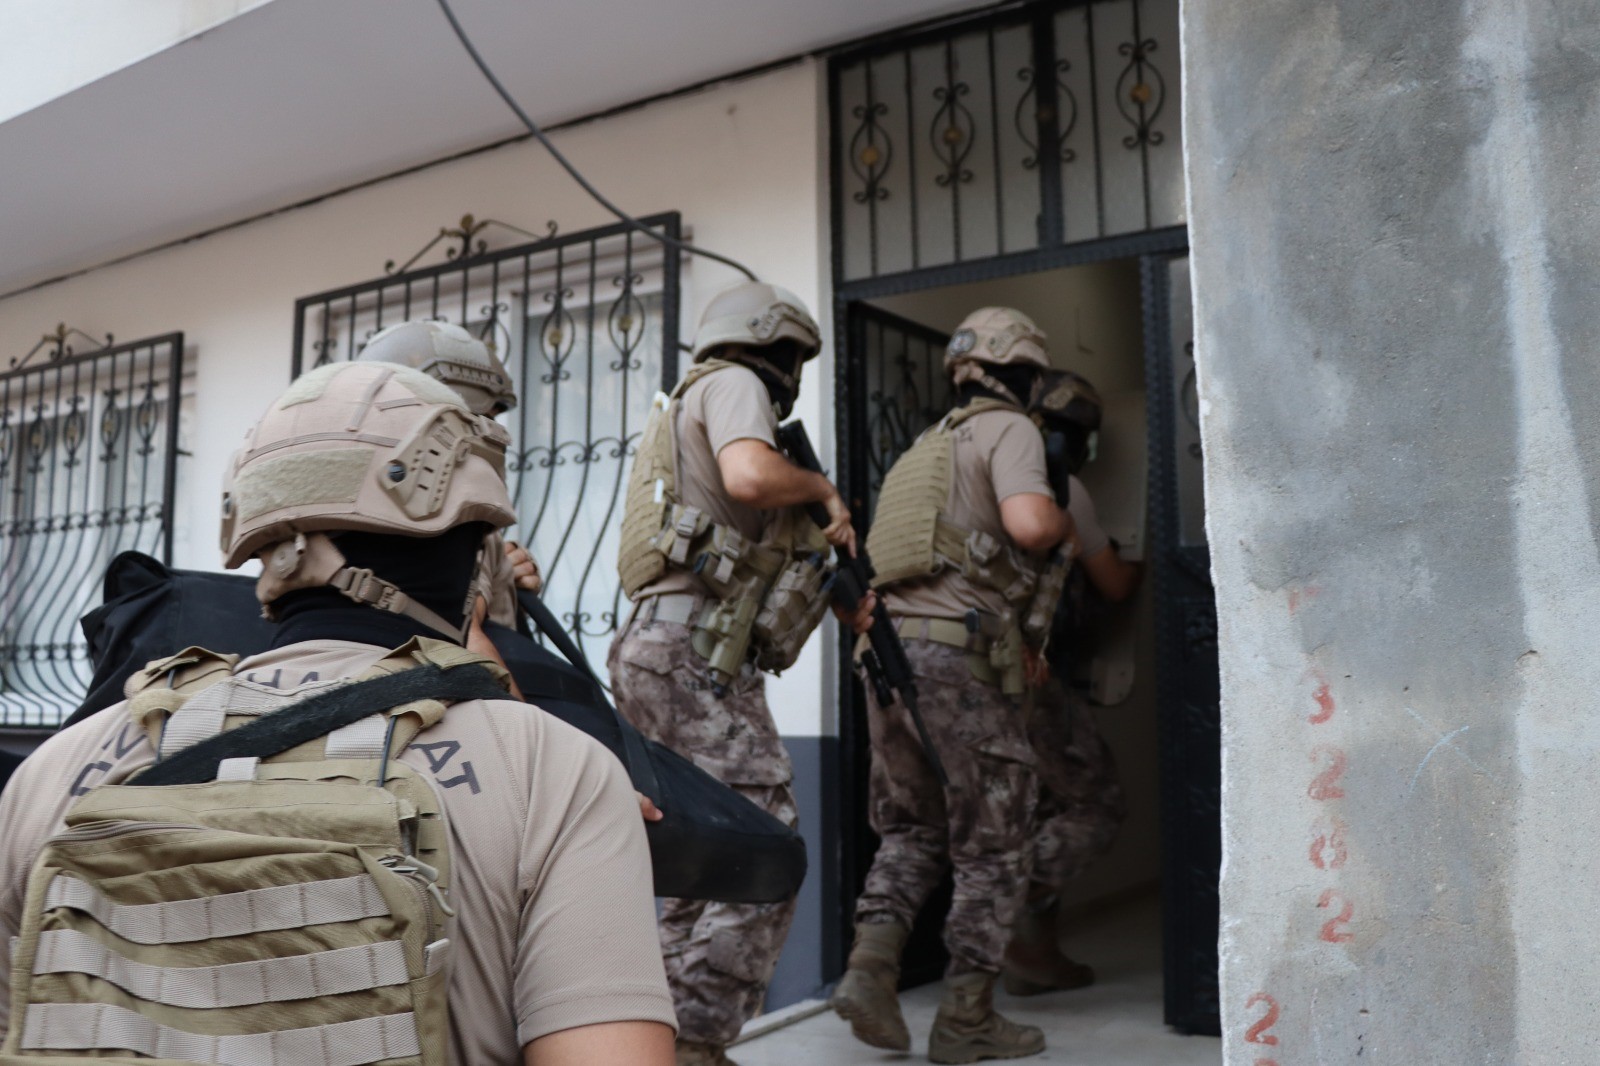 Eylem hazırlığındaki PKK'ya operasyon: 9 gözaltı